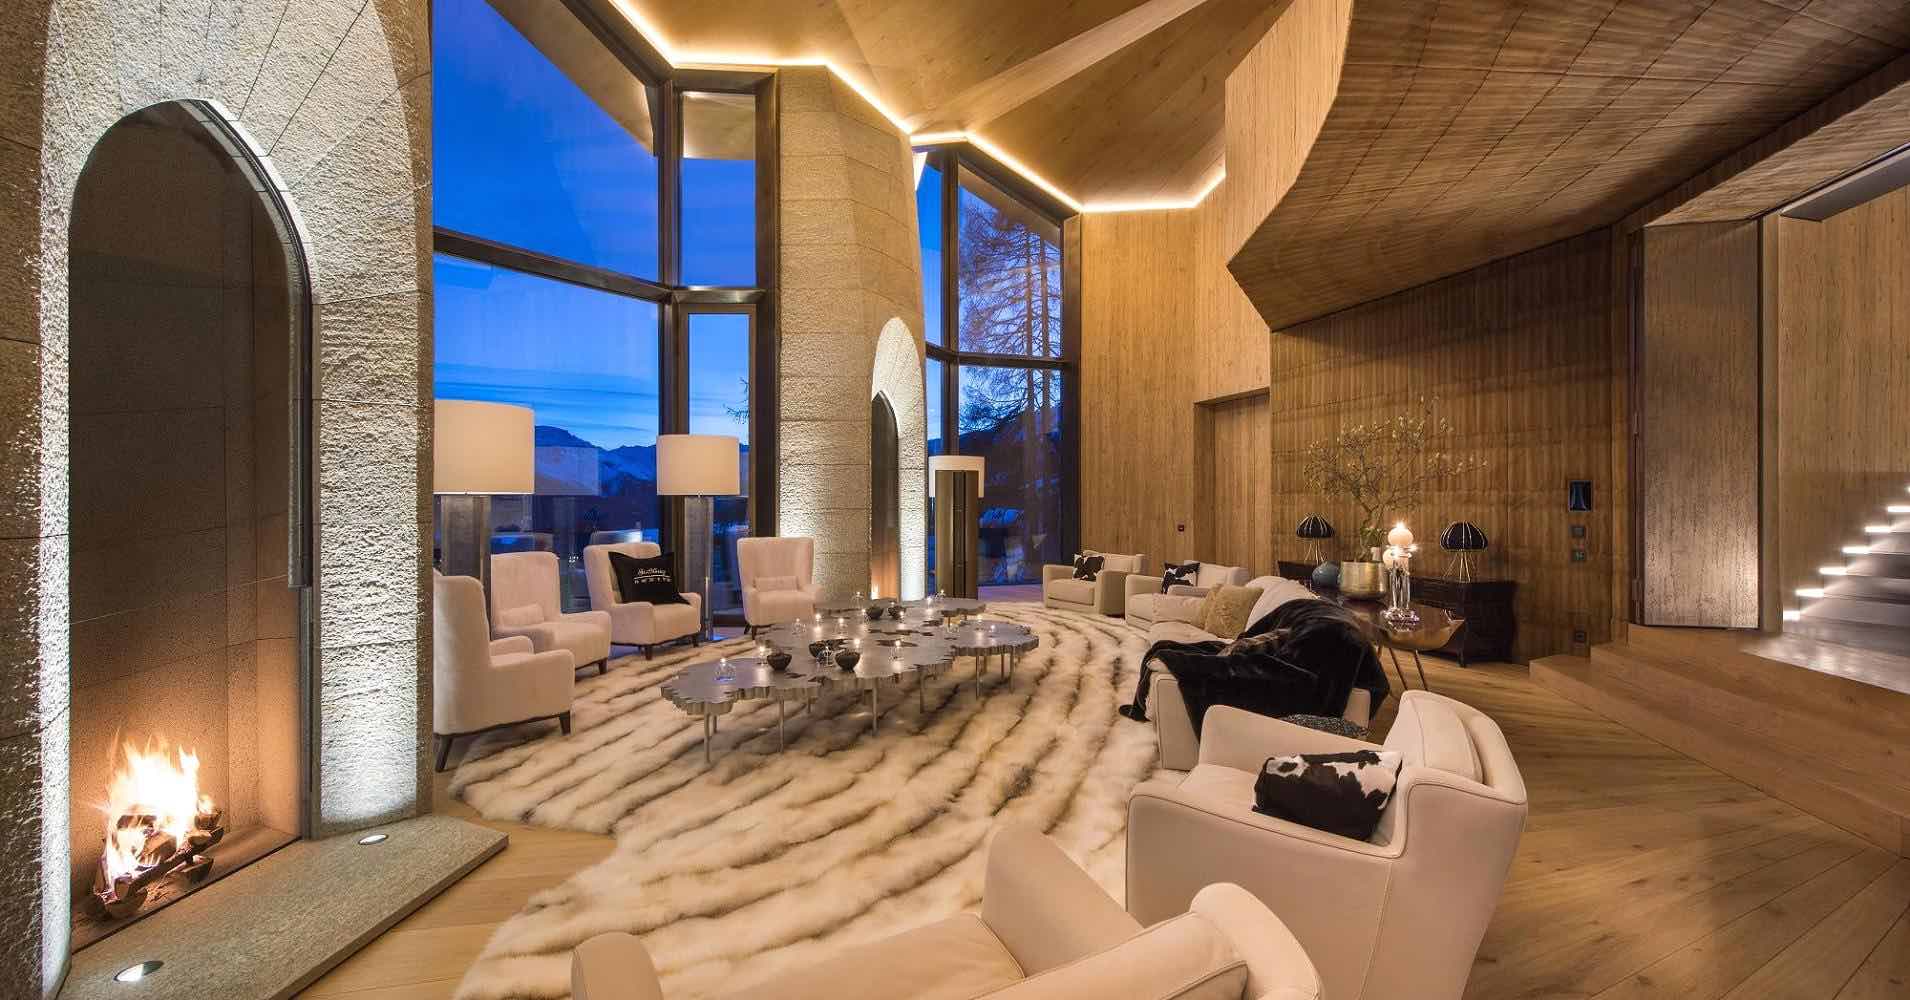 Está lujosa mega mansión es la más cara de St. Moritz, Suiza y ahora la puedes comprar por $185 millones